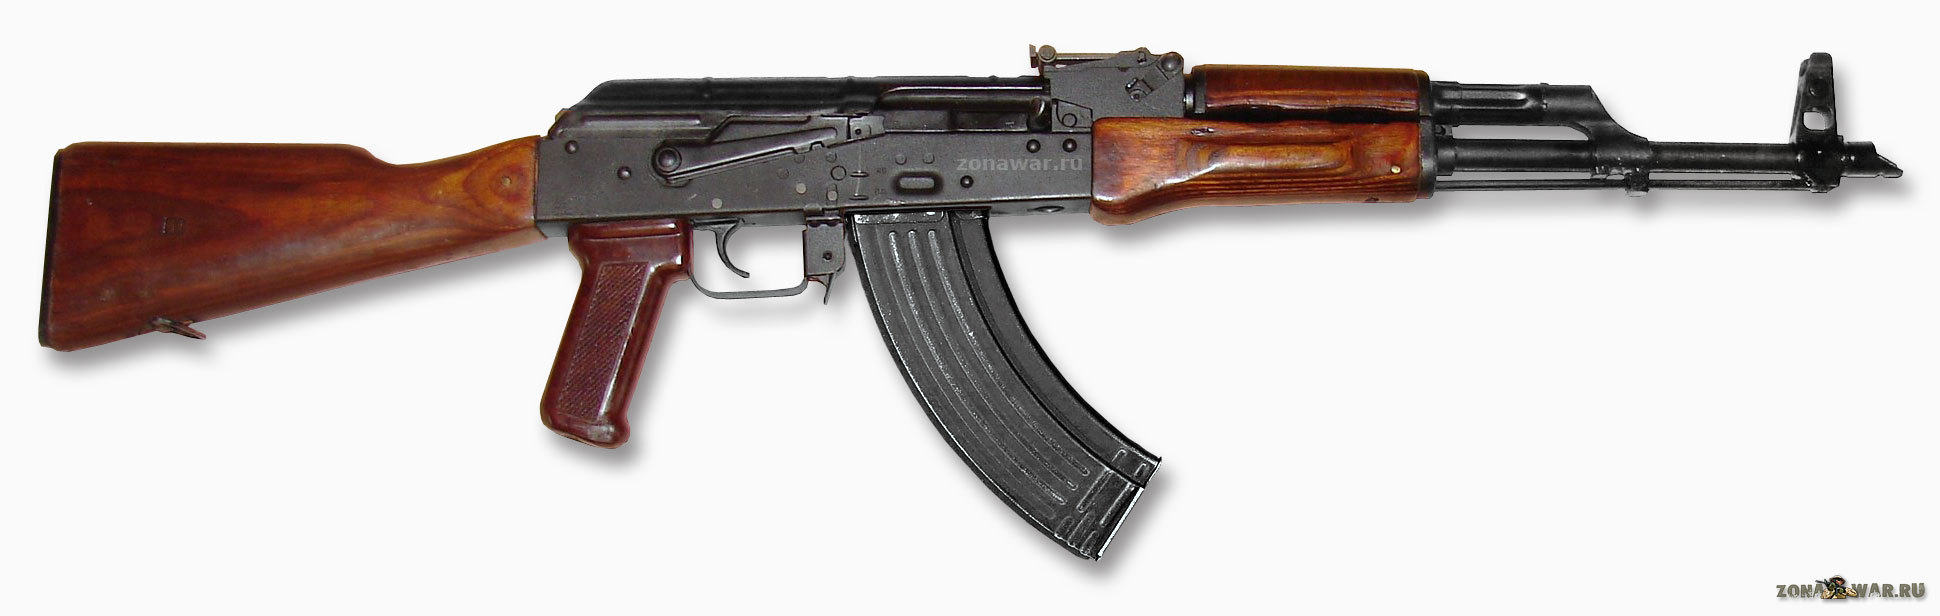 AKM assault rifles